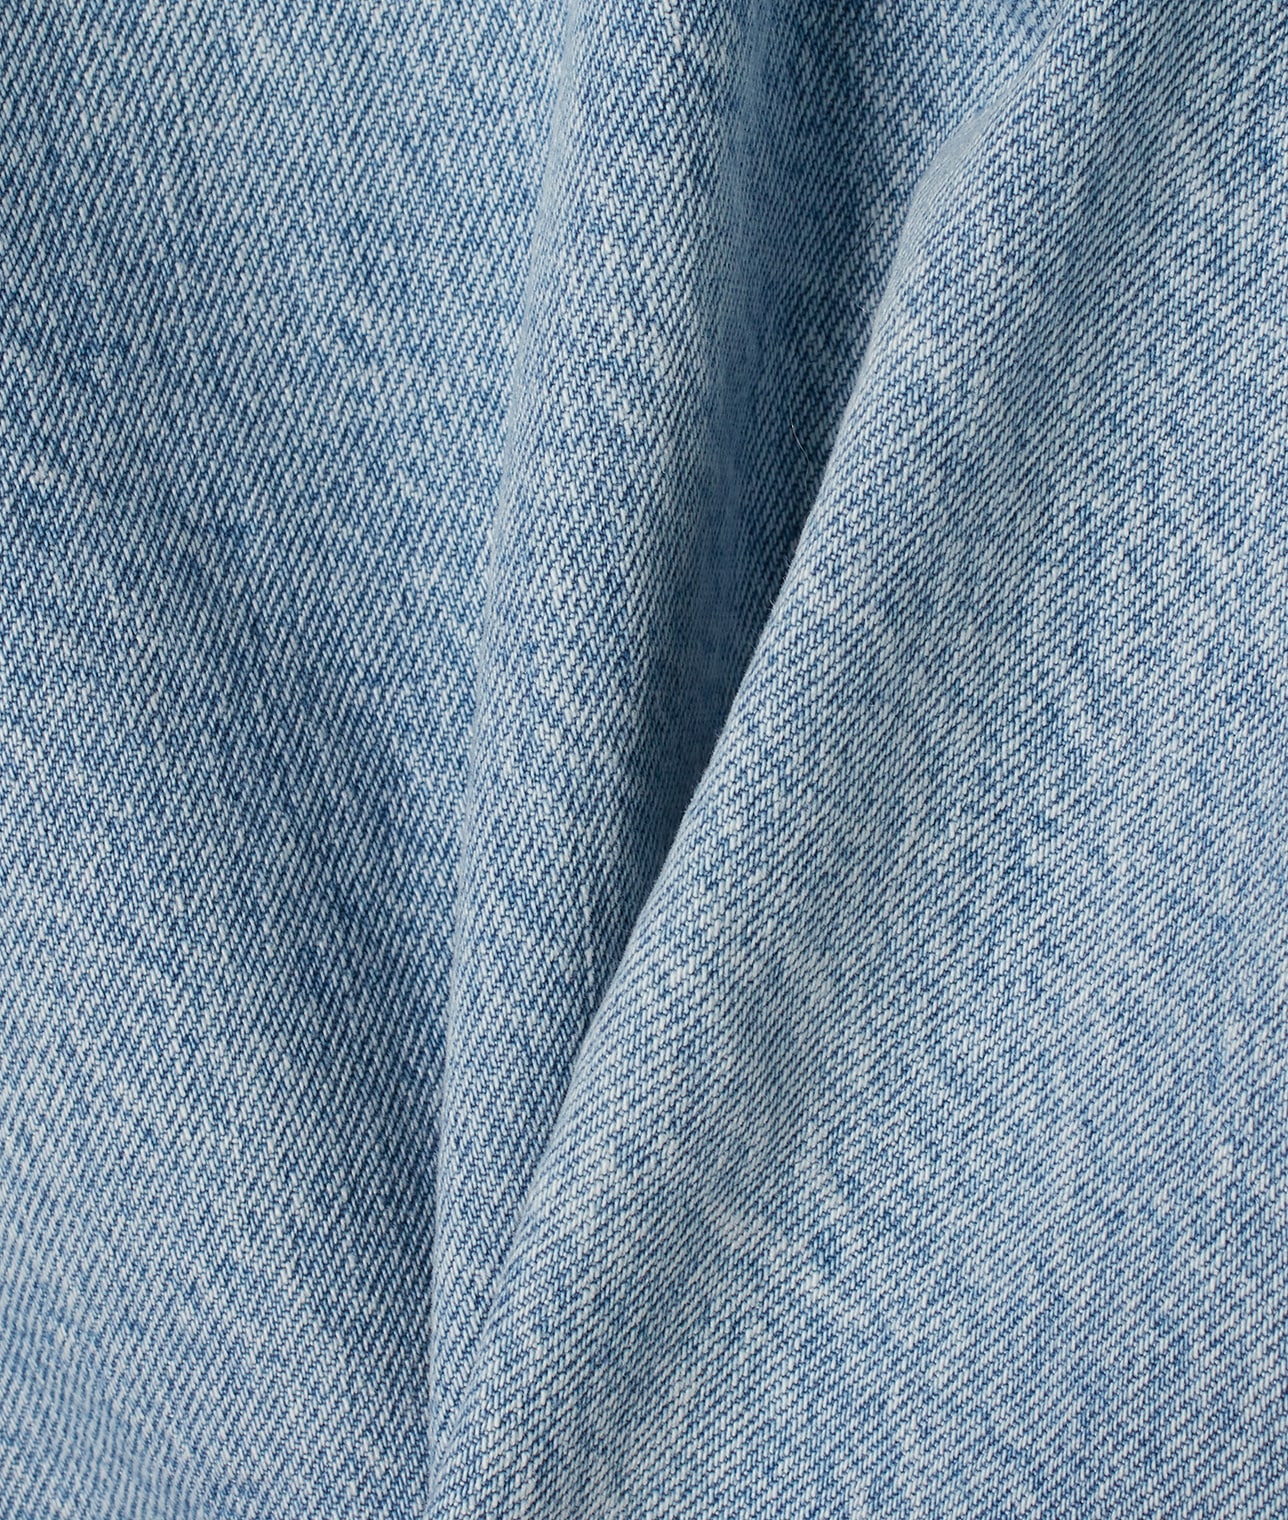 デニムオーバーシャツジャケット 詳細画像 ブルー 12